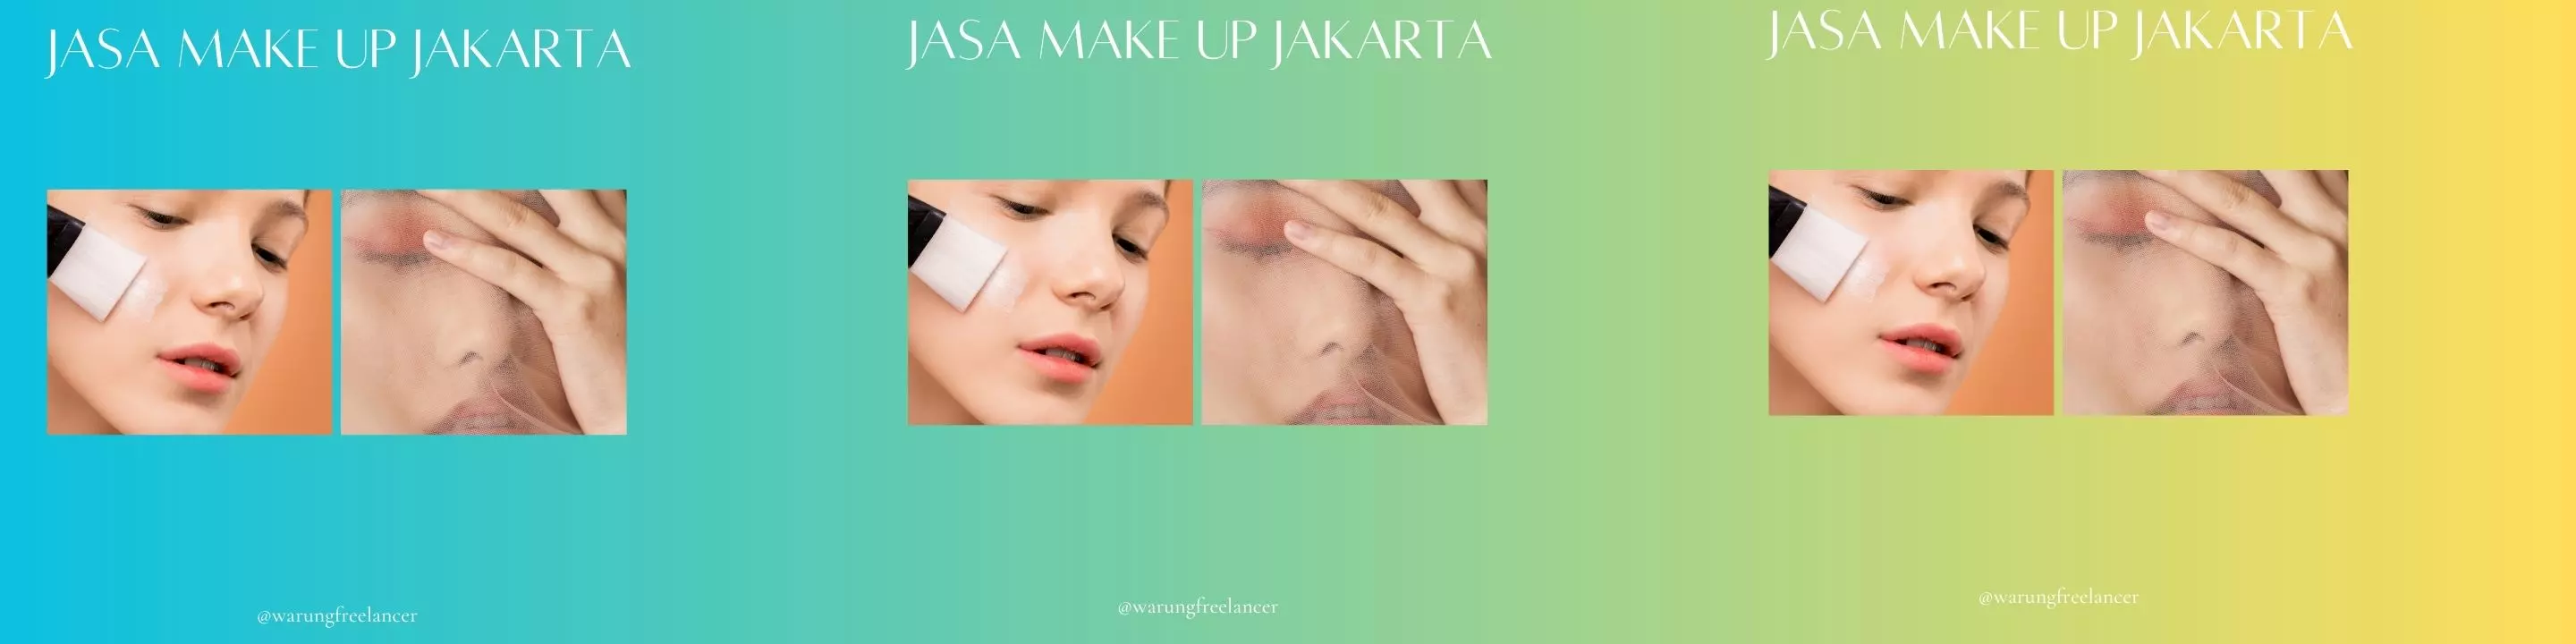 Jasa Make Up Jakarta